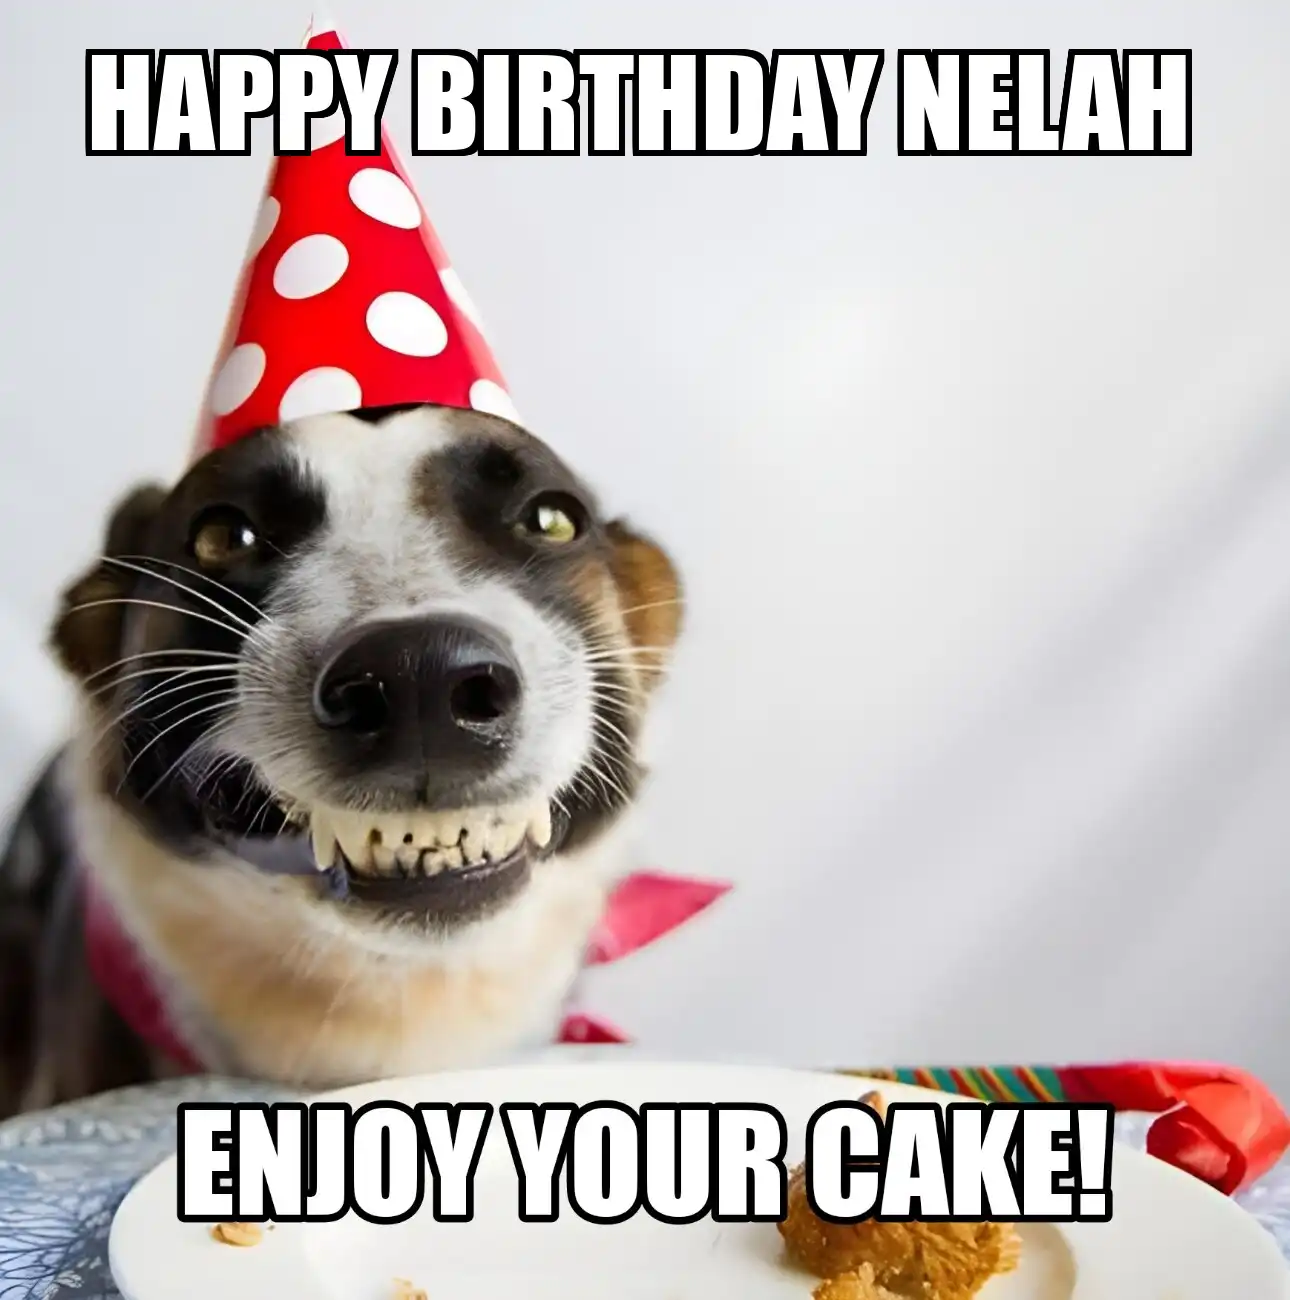 Happy Birthday Nelah Enjoy Your Cake Dog Meme